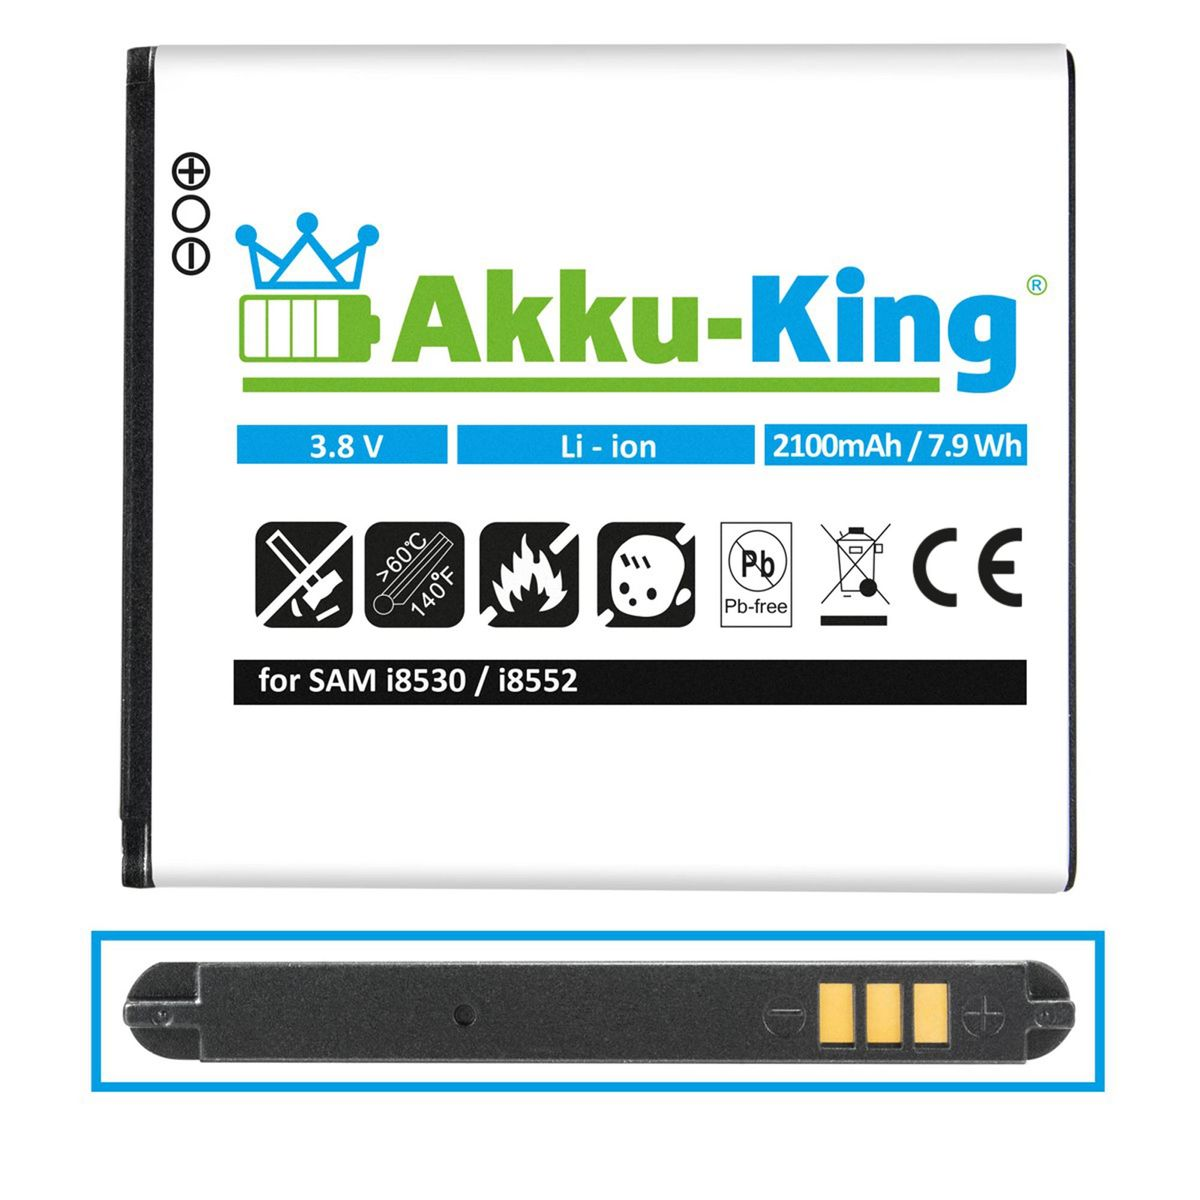 2100mAh 3.8 EB585157LU Handy-Akku, Akku Samsung kompatibel mit Li-Ion Volt, AKKU-KING